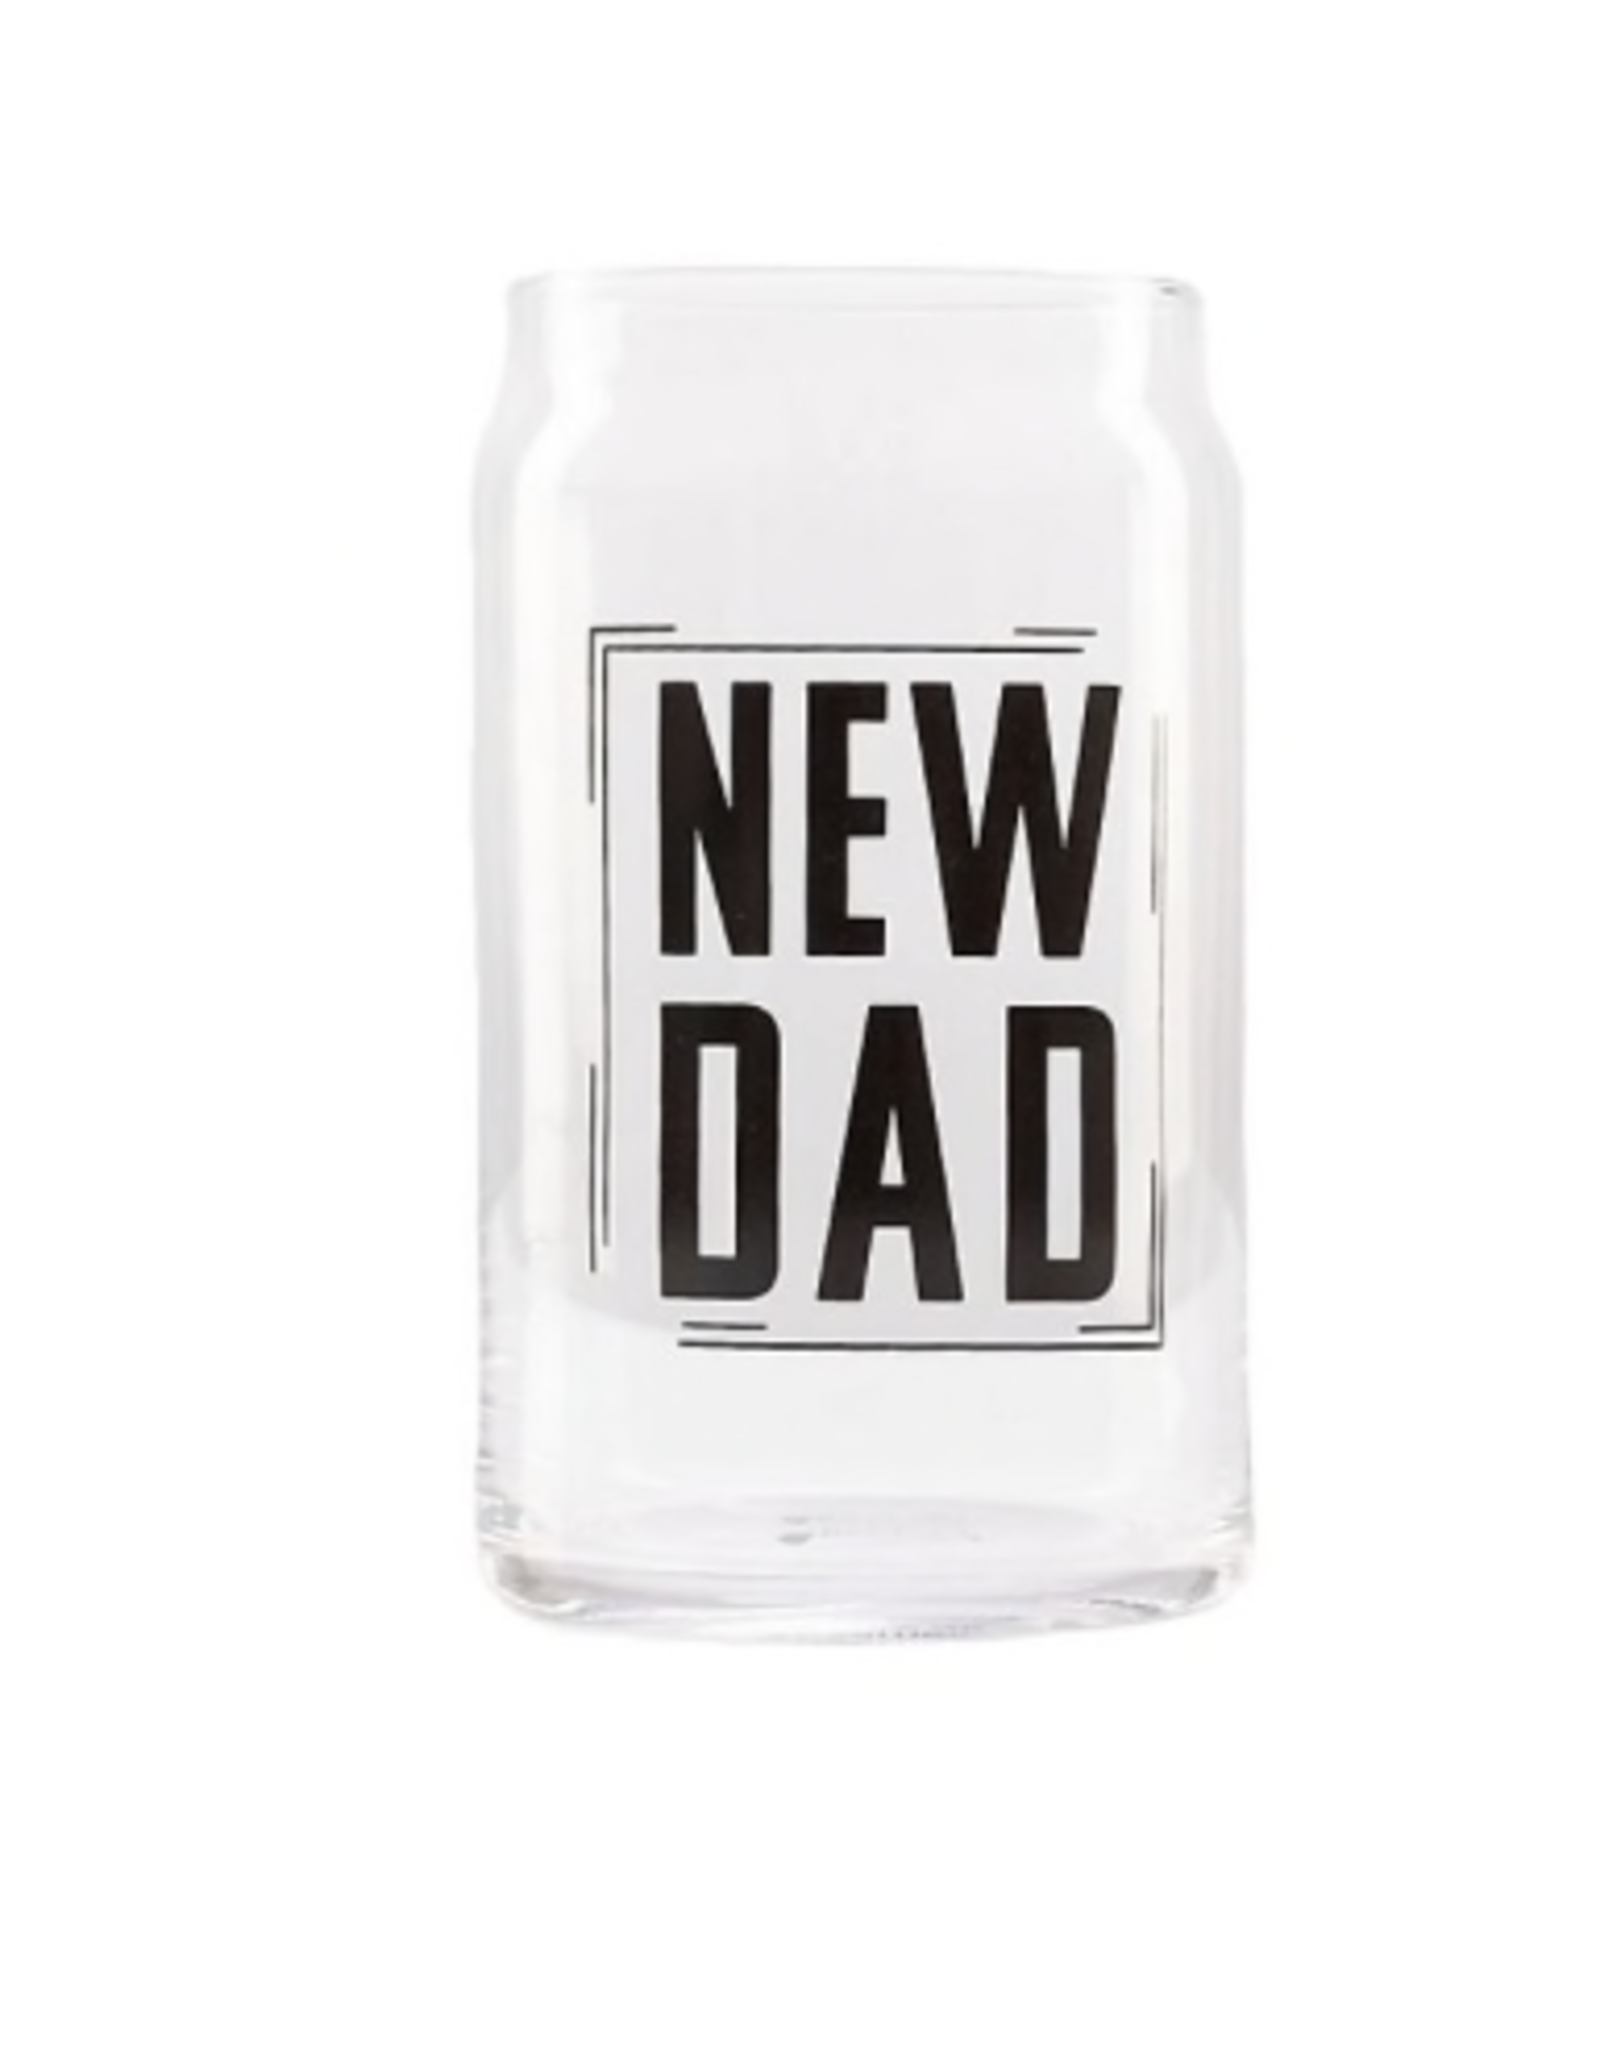 Pearhead New Dad Beer Mug